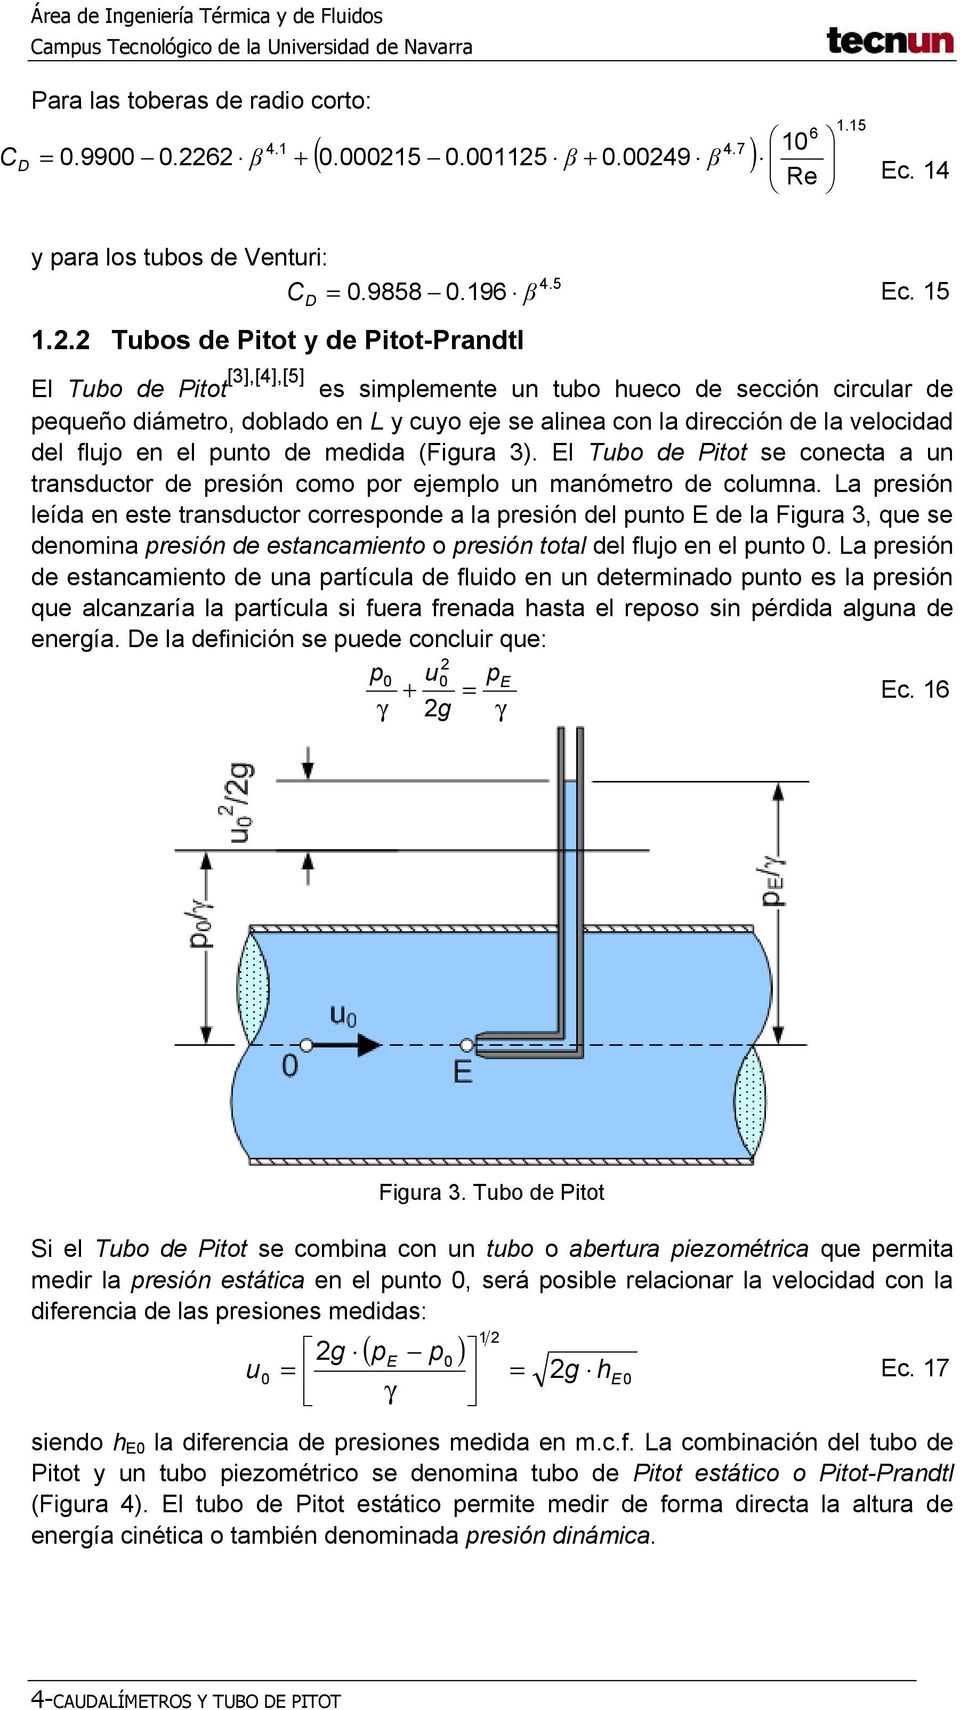 . Tubos de Pitot y de Pitot-Prandtl D El Tubo de Pitot [3],[4],[5] es simplemente un tubo hueco de sección circular de pequeño diámetro, doblado en L y cuyo eje se alinea con la dirección de la